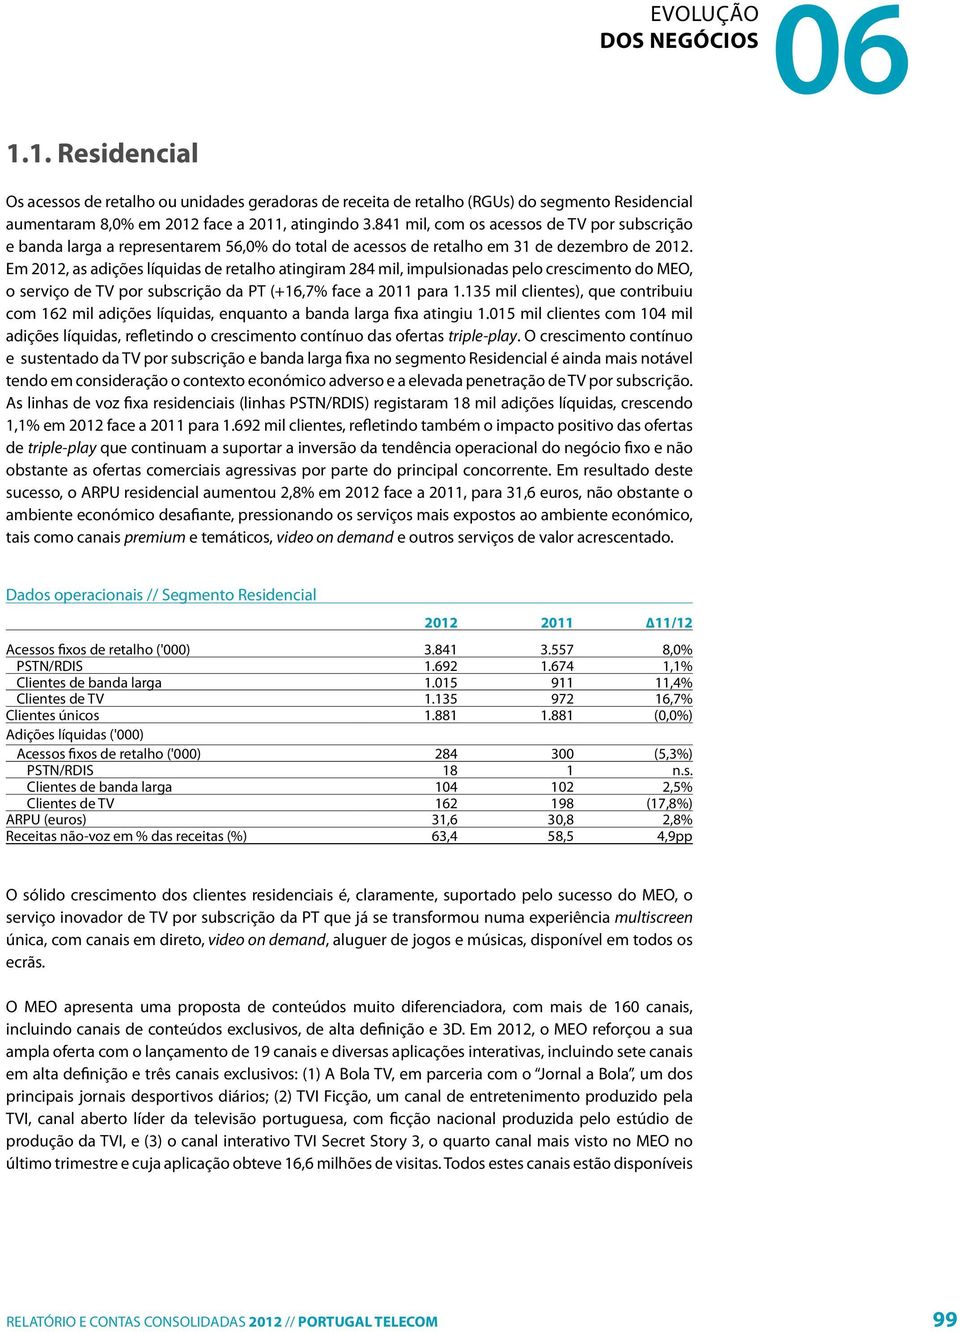 Em 2012, as adições líquidas de retalho atingiram 284 mil, impulsionadas pelo crescimento do MEO, o serviço de TV por subscrição da PT (+16,7% face a 2011 para 1.